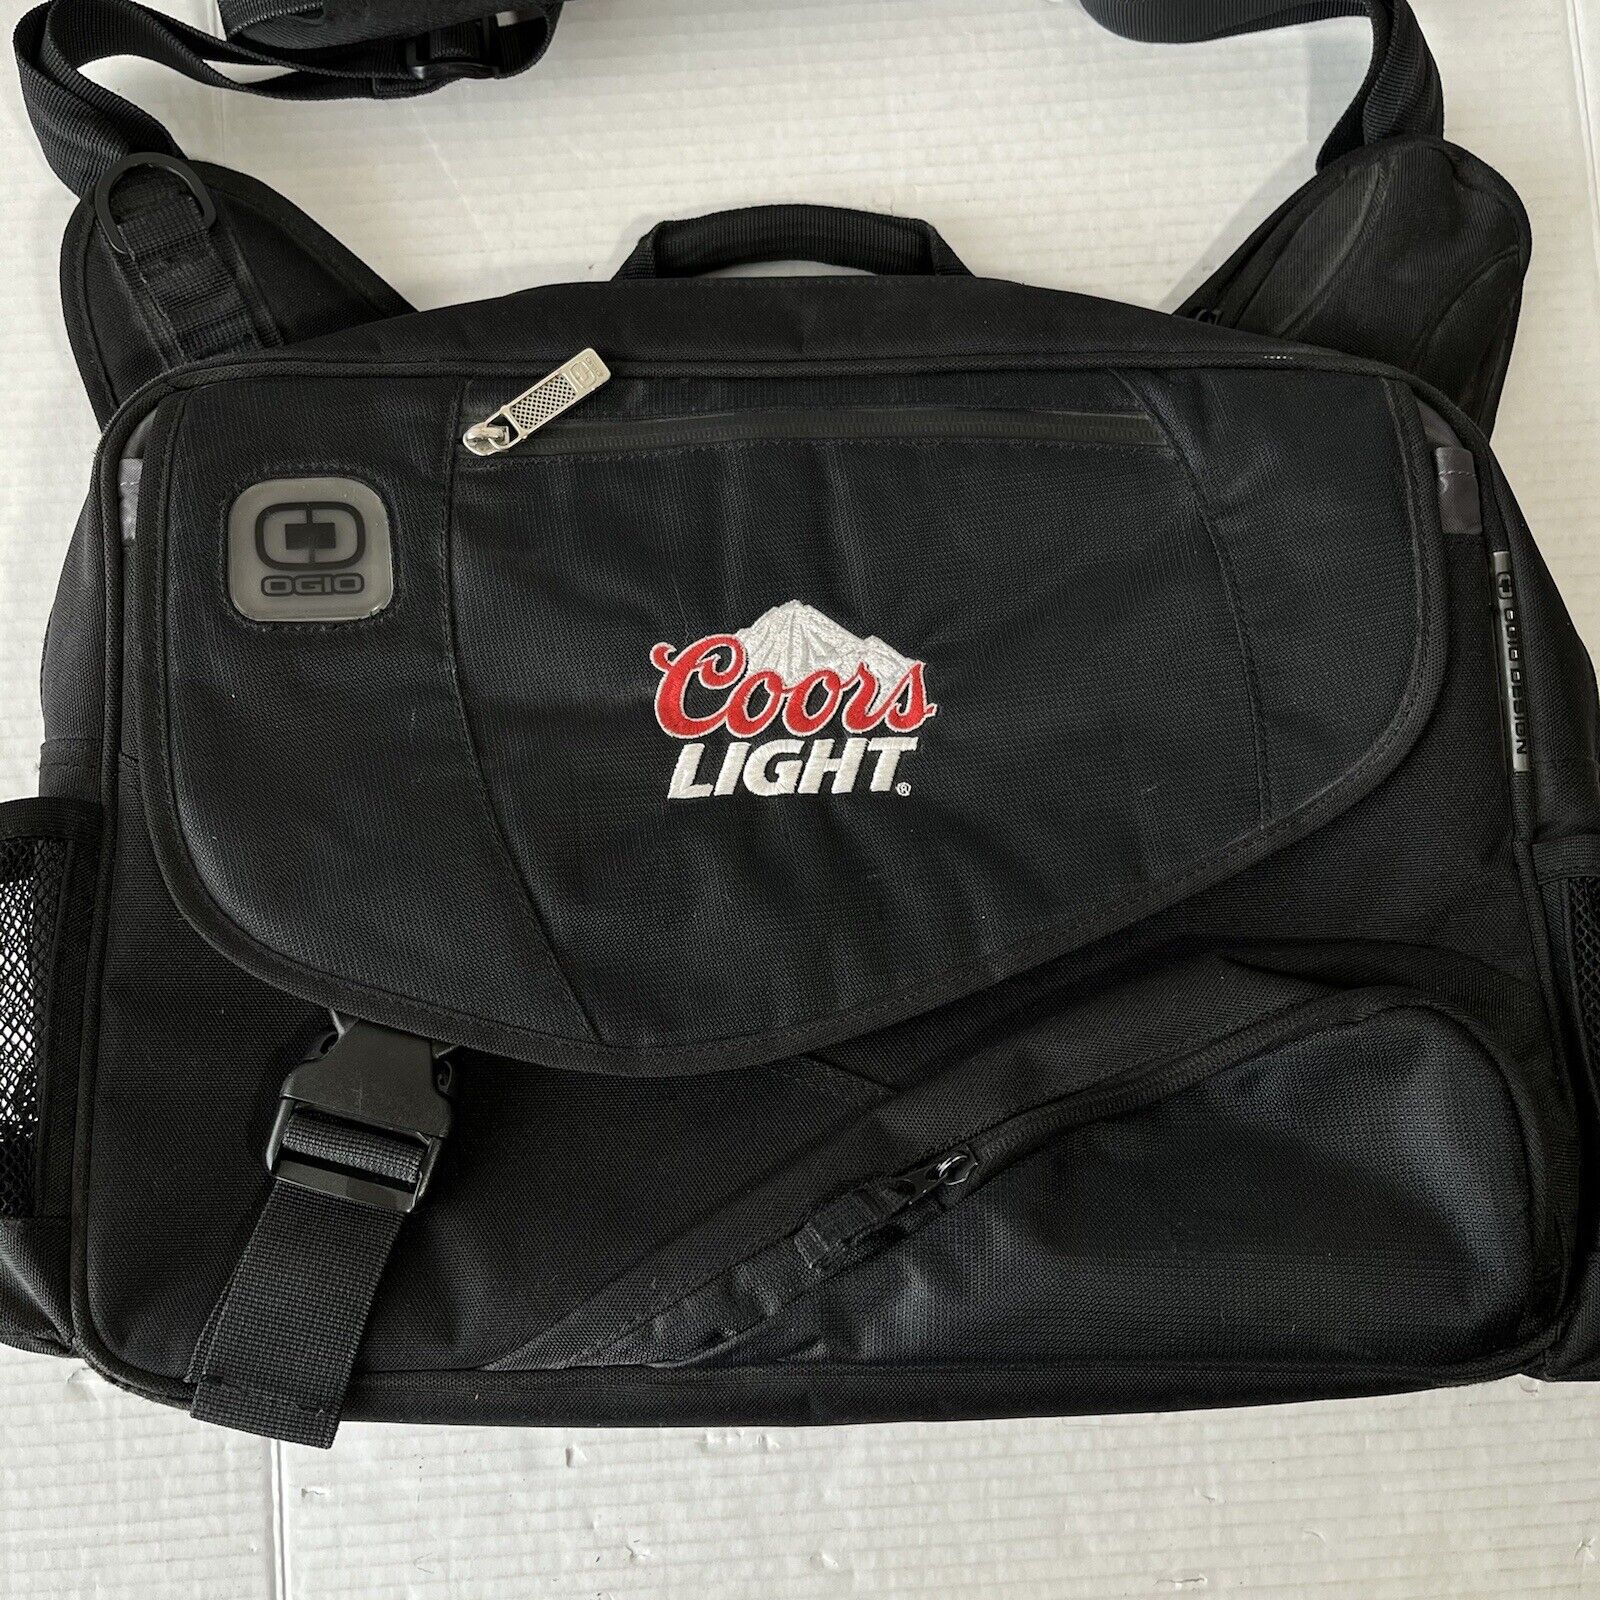 OGIO Street Hip Hop Coors Light Messenger Bag Black Padded Laptop Backpack